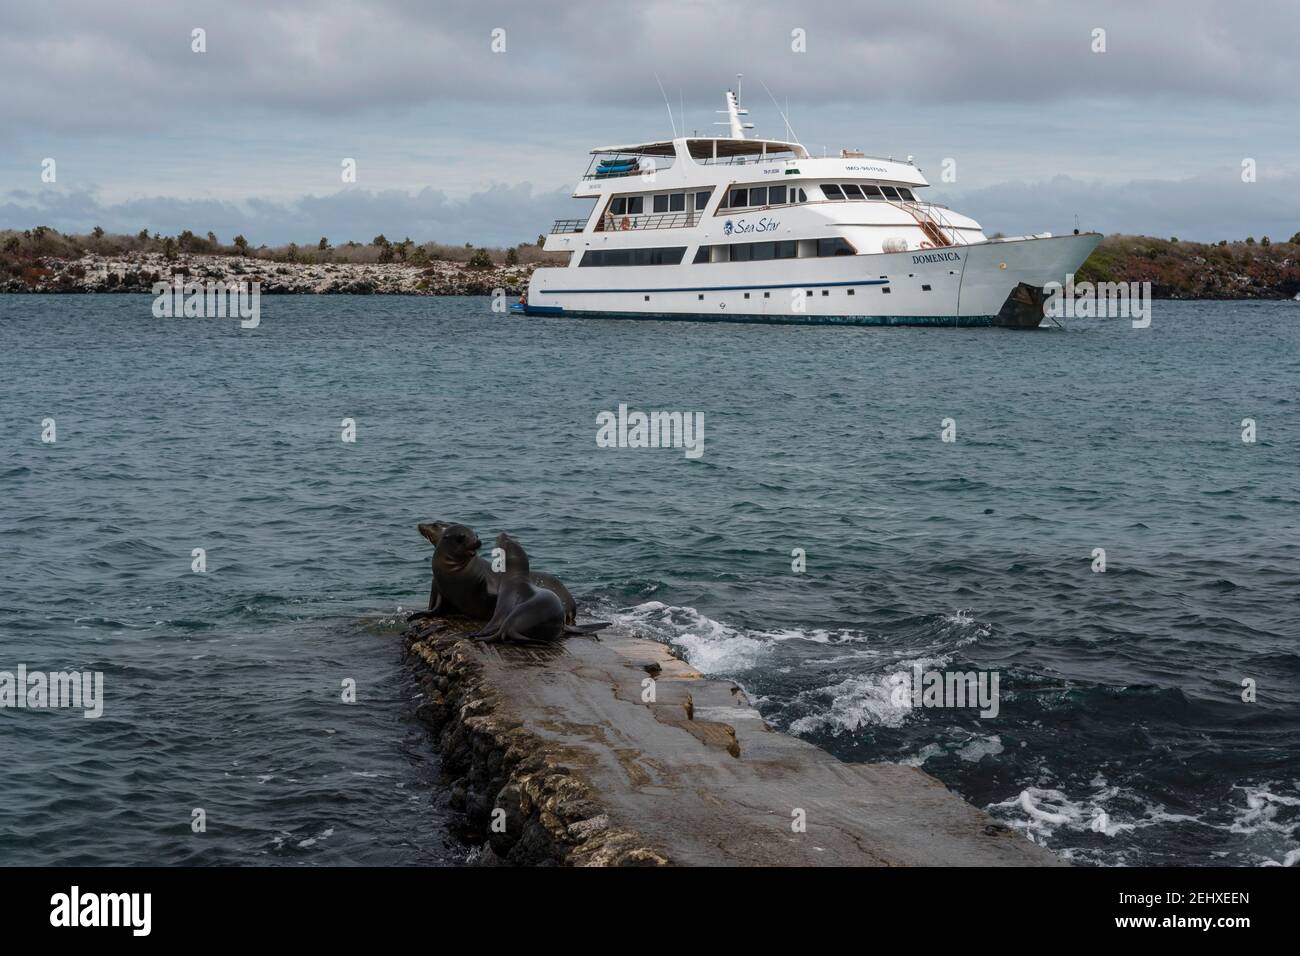 A cruise ship anchored in South Plaza Island, Galapagos islands, Ecuador. Stock Photo